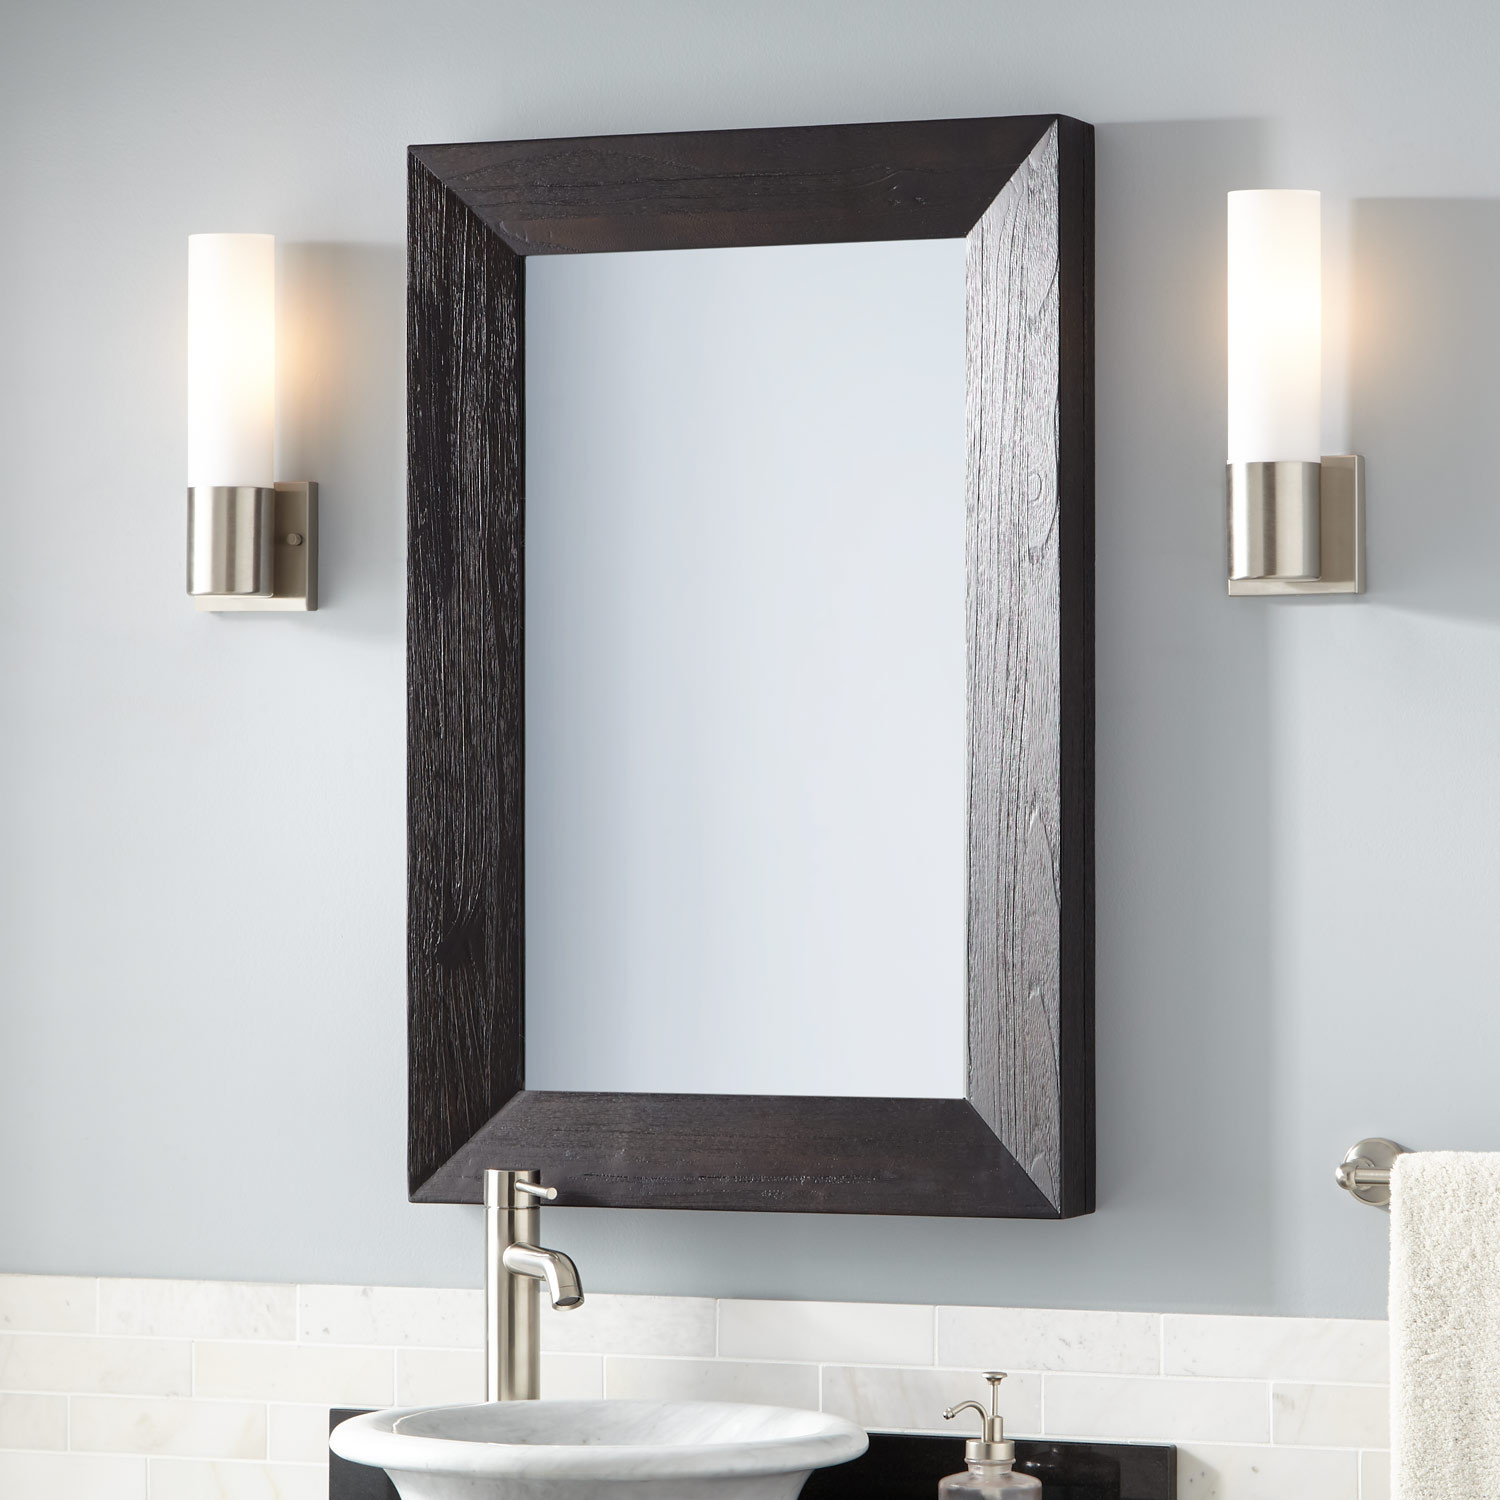 Rustic Bathroom Vanity Mirrors
 Kane Vanity Mirror Rustic Black Bathroom Mirrors